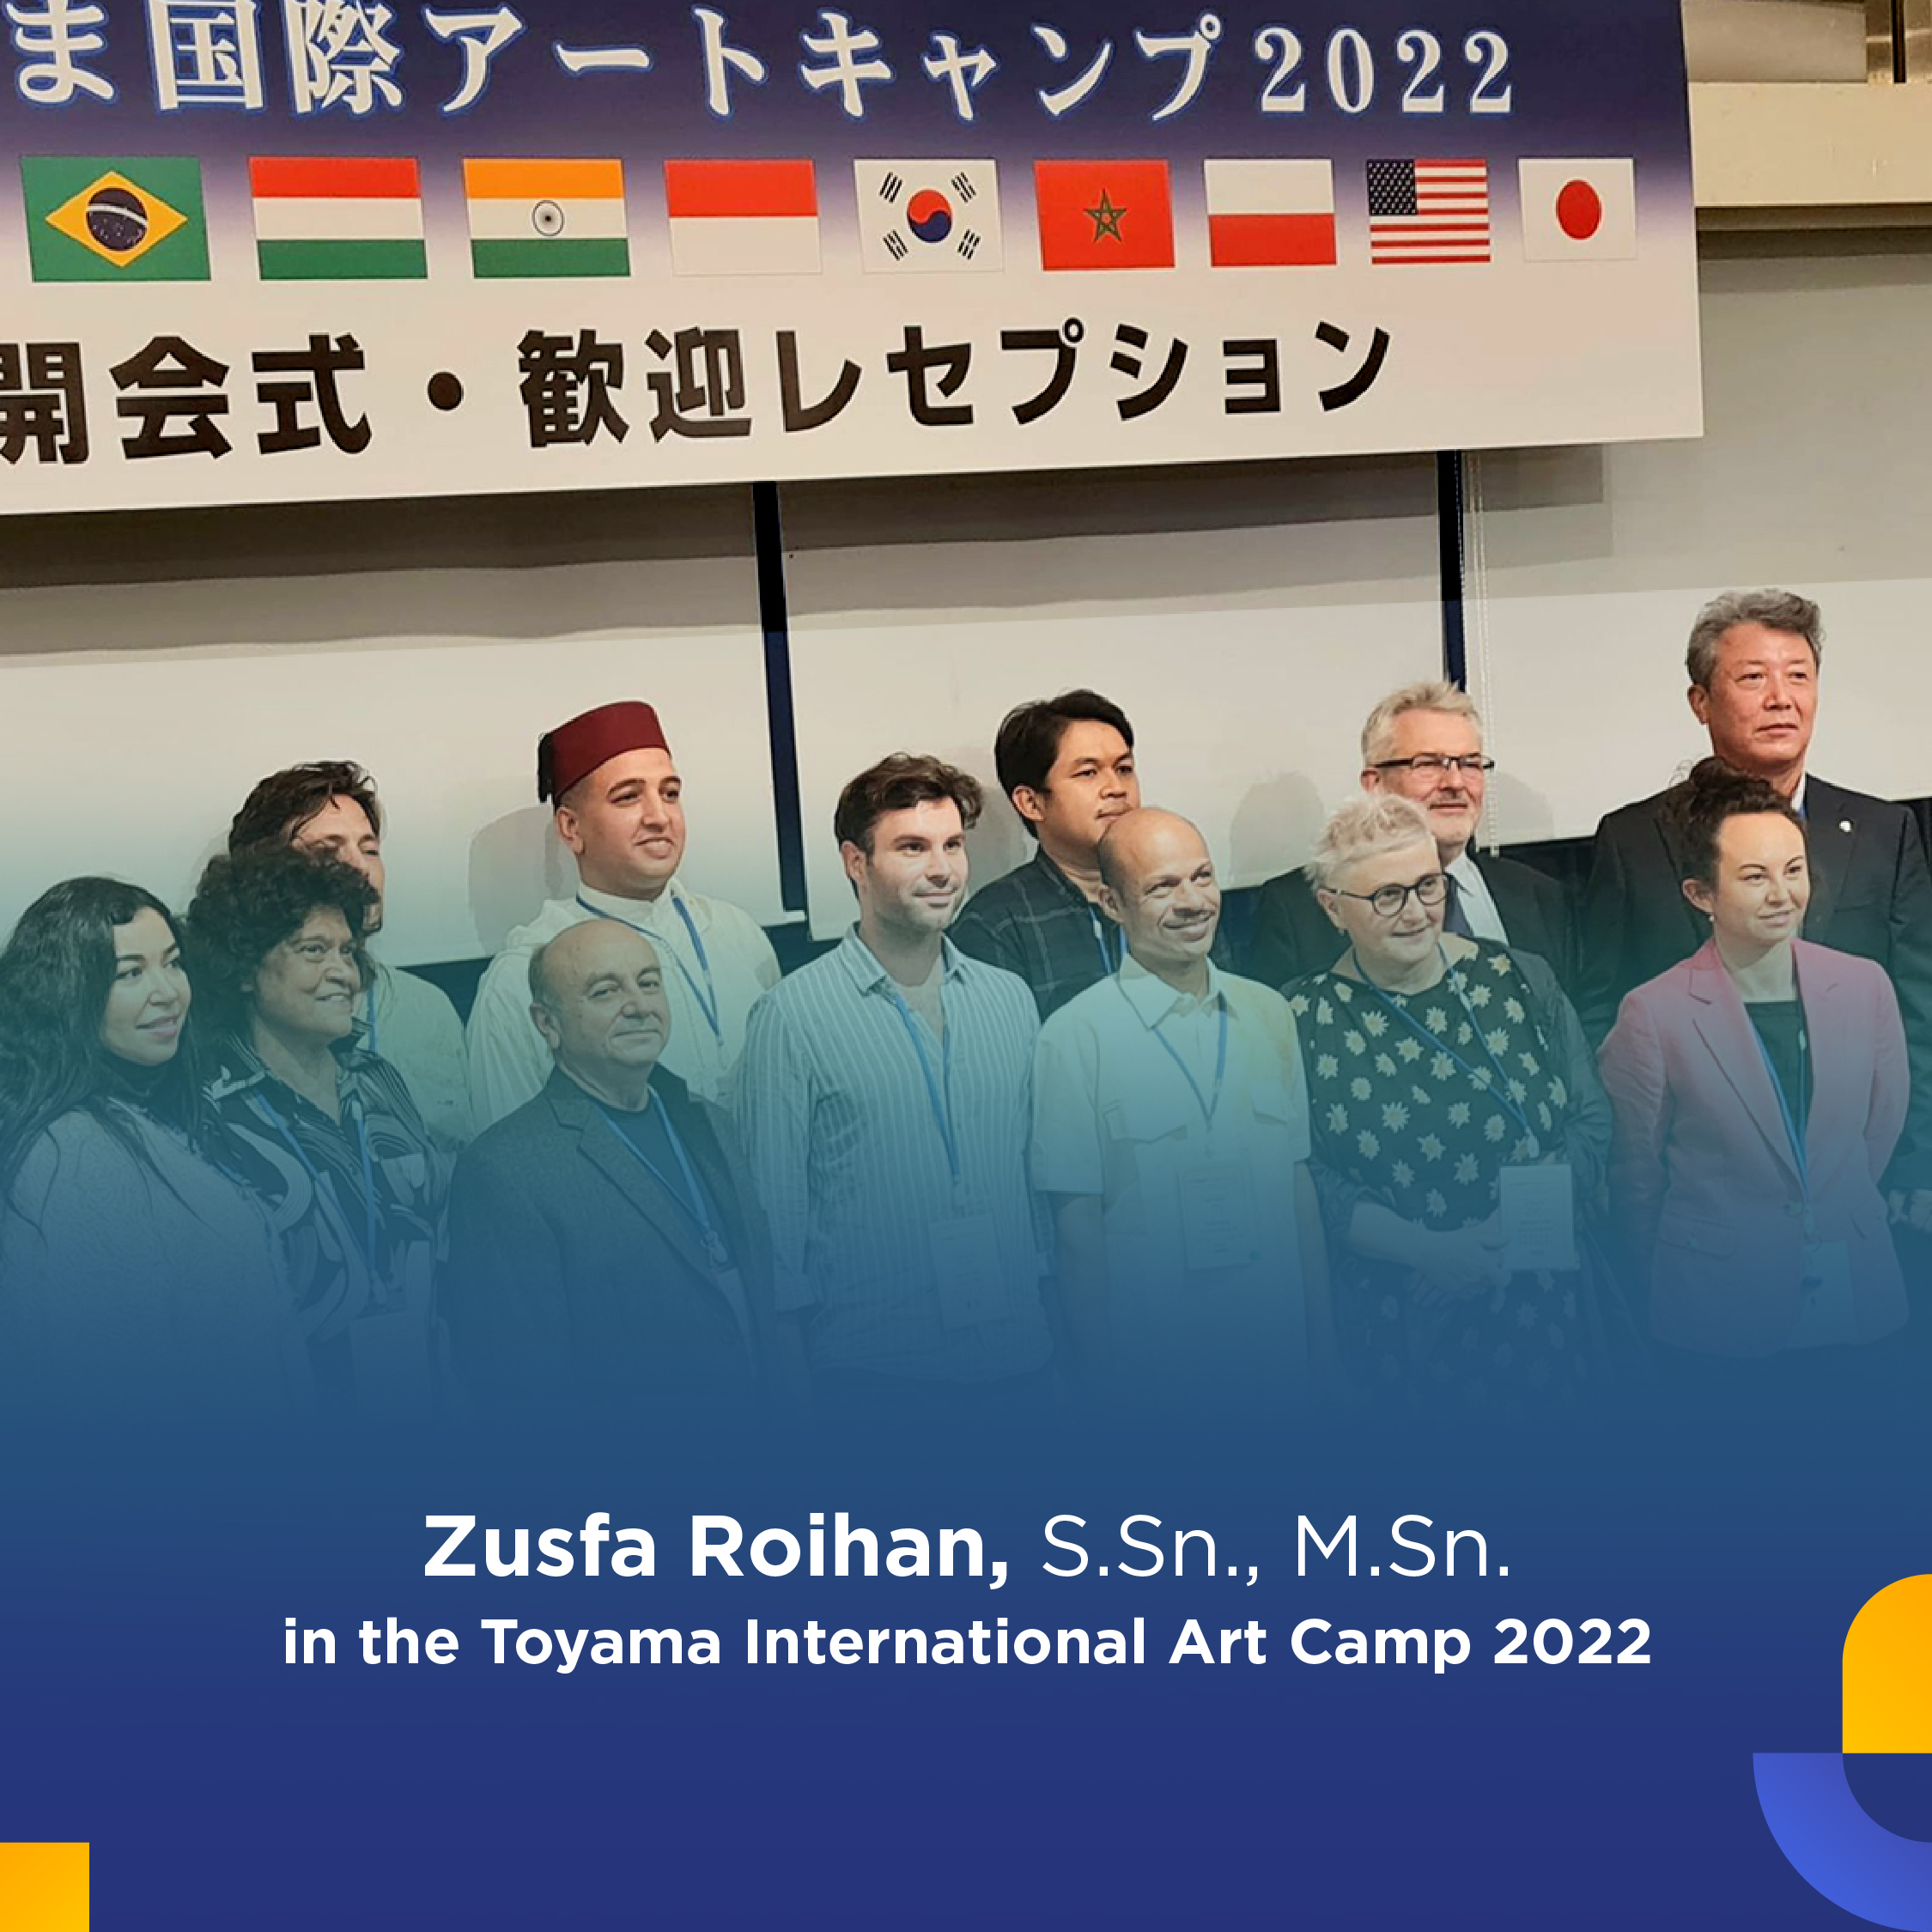 Zusfa Roihan, S.Sn., M.Sn. in the Toyama International Art Camp 2022